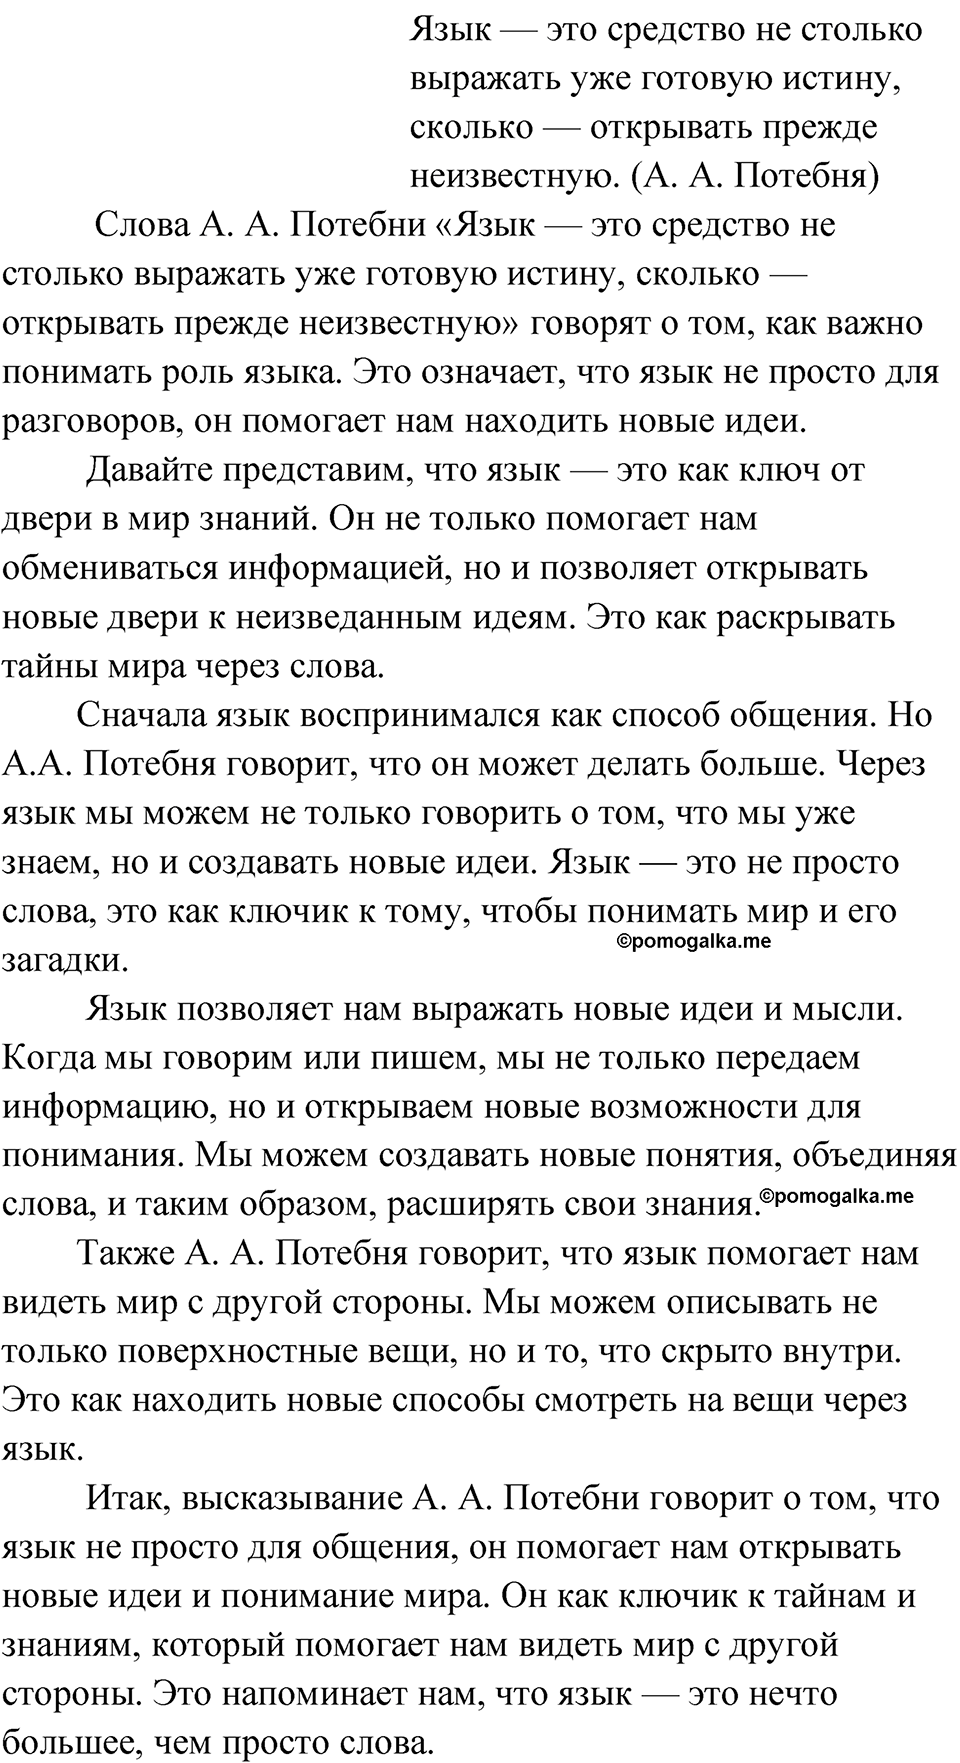 страница 133 упражнение 99 русский язык 9 класс Быстрова 1 часть 2022 год